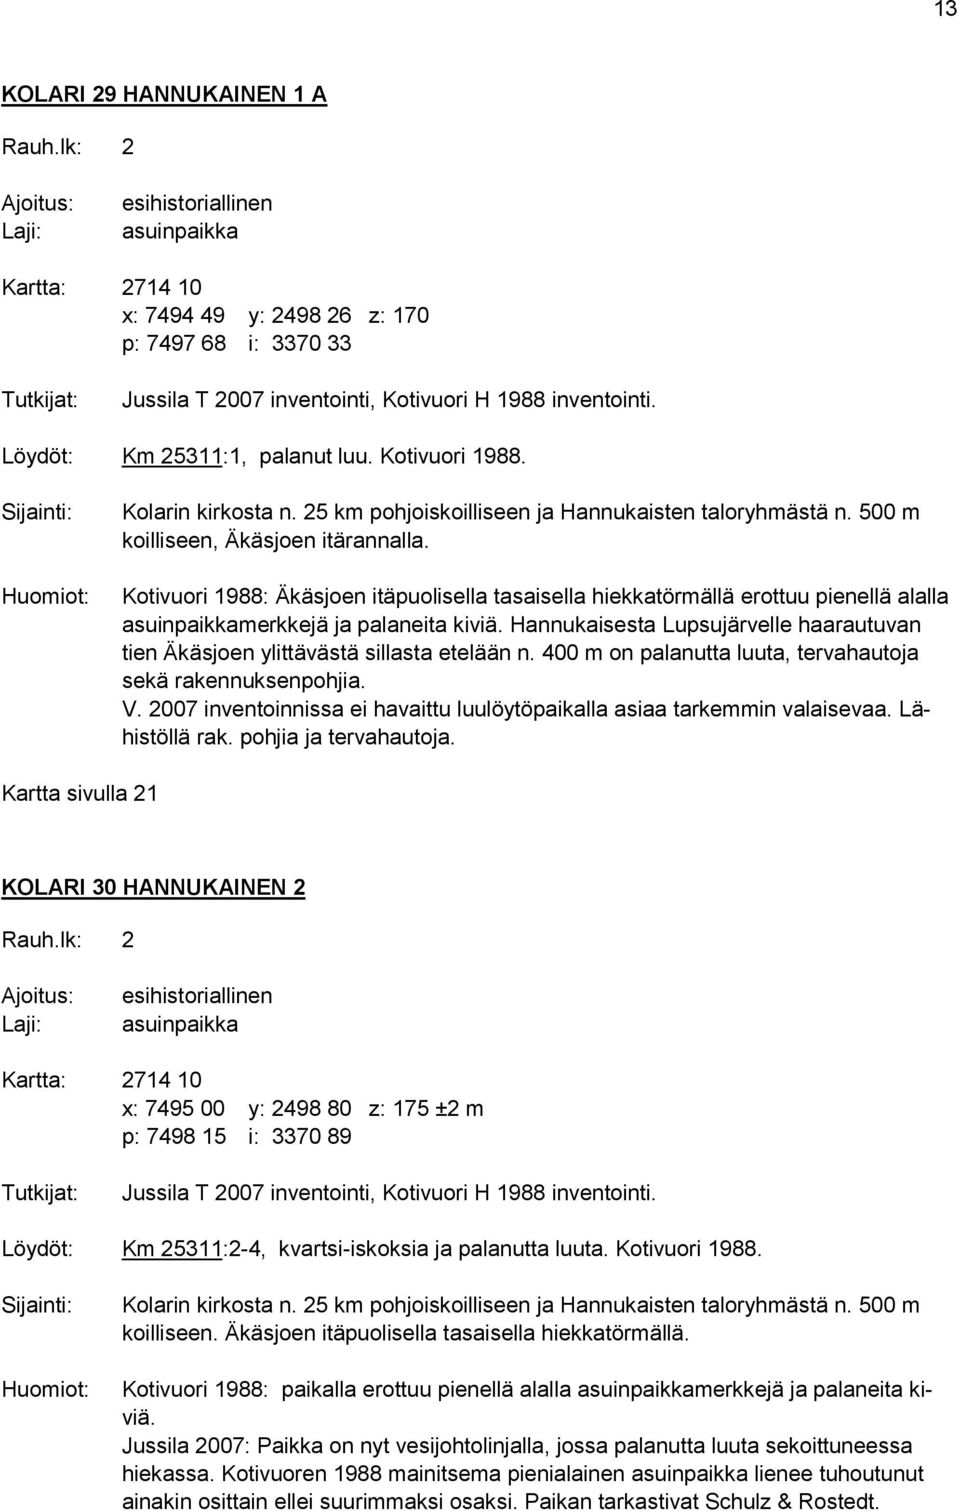 Löydöt: Km 25311:1, palanut luu. Kotivuori 1988. Sijainti: Huomiot: Kolarin kirkosta n. 25 km pohjoiskoilliseen ja Hannukaisten taloryhmästä n. 500 m koilliseen, Äkäsjoen itärannalla.